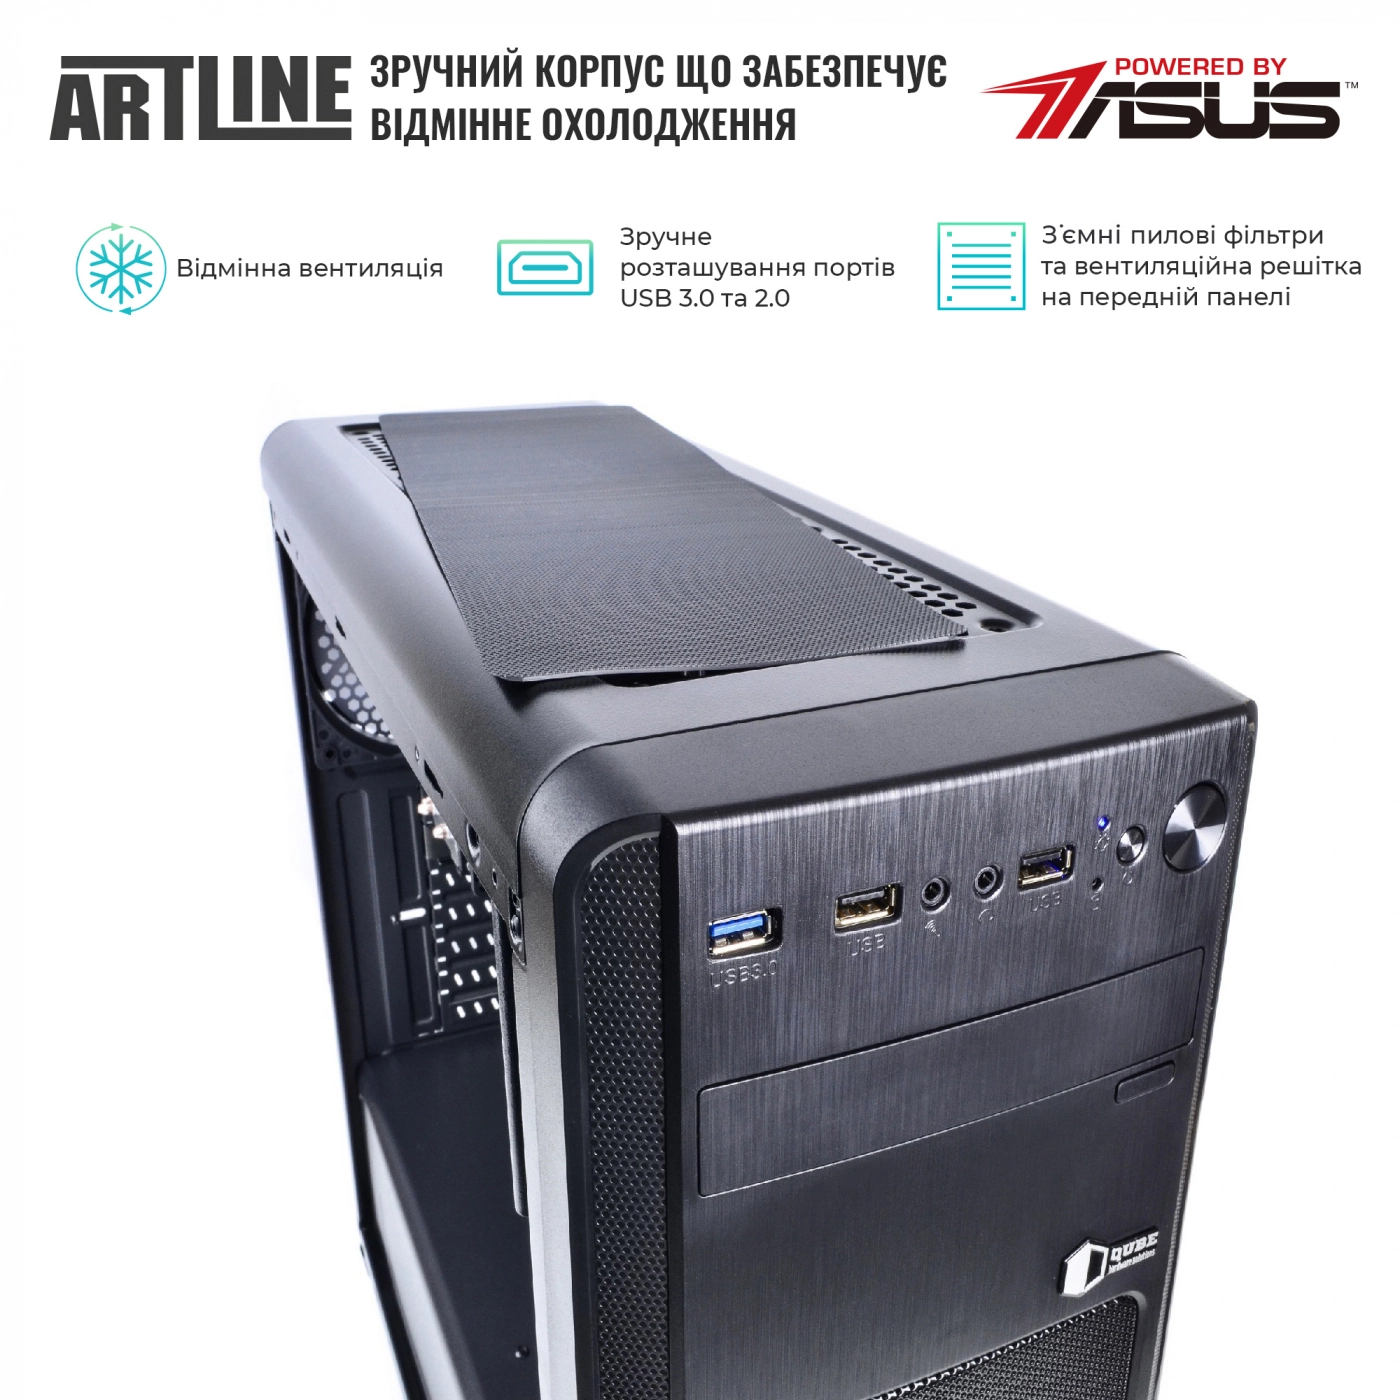 Купить Сервер ARTLINE Business T17v20 - фото 2